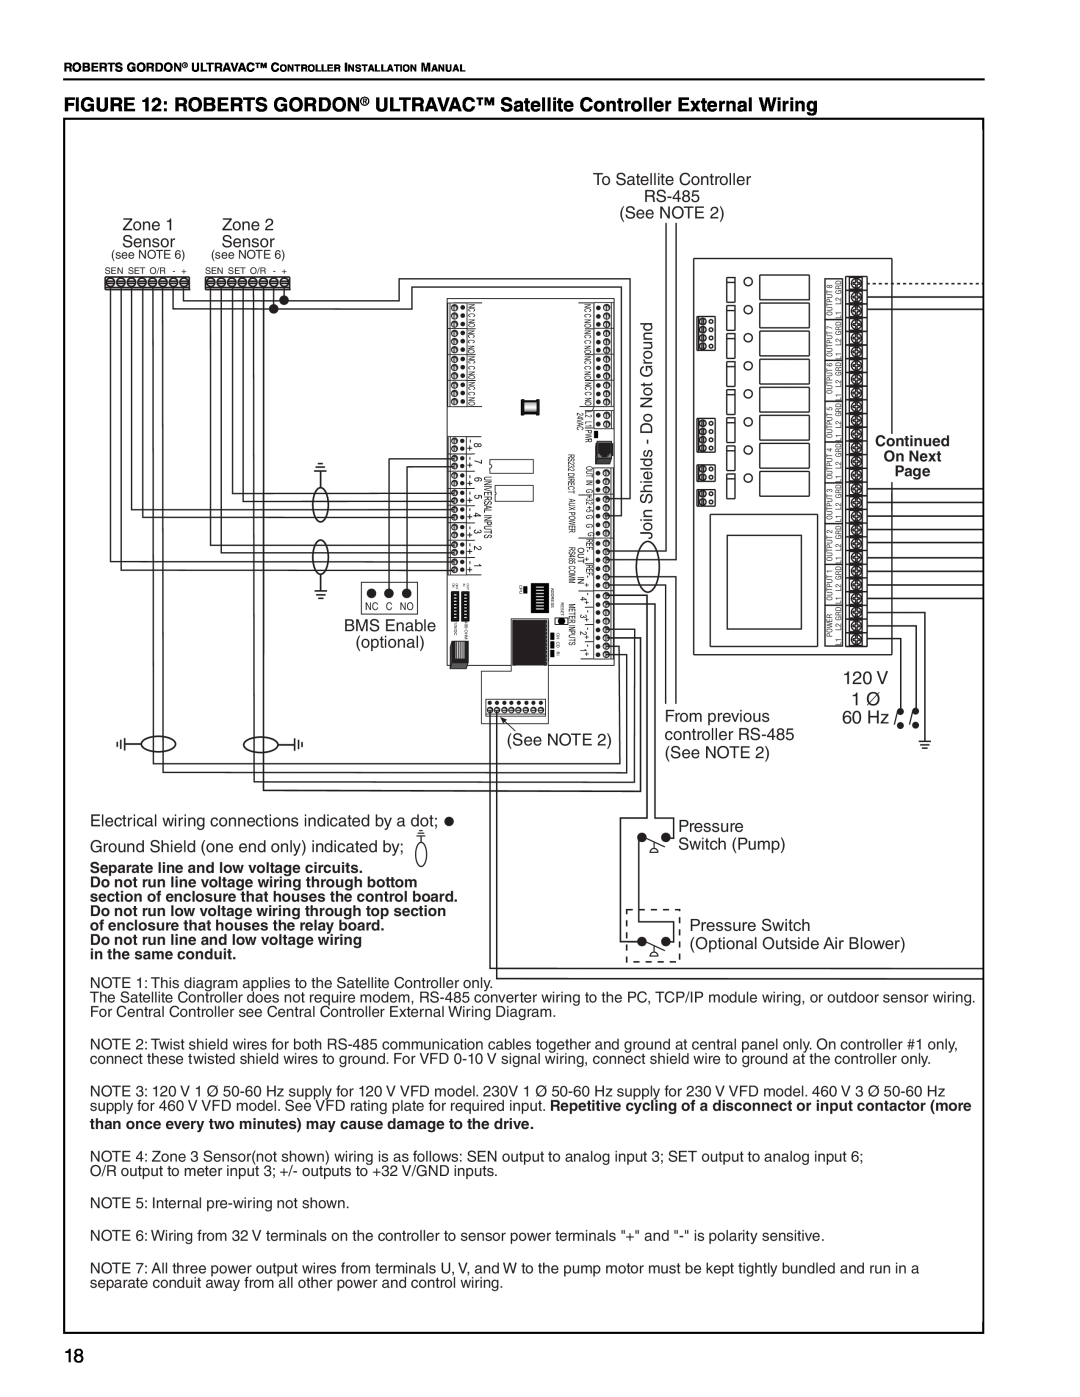 Roberts Gorden NEMA 4 installation manual 120 1 Ø 